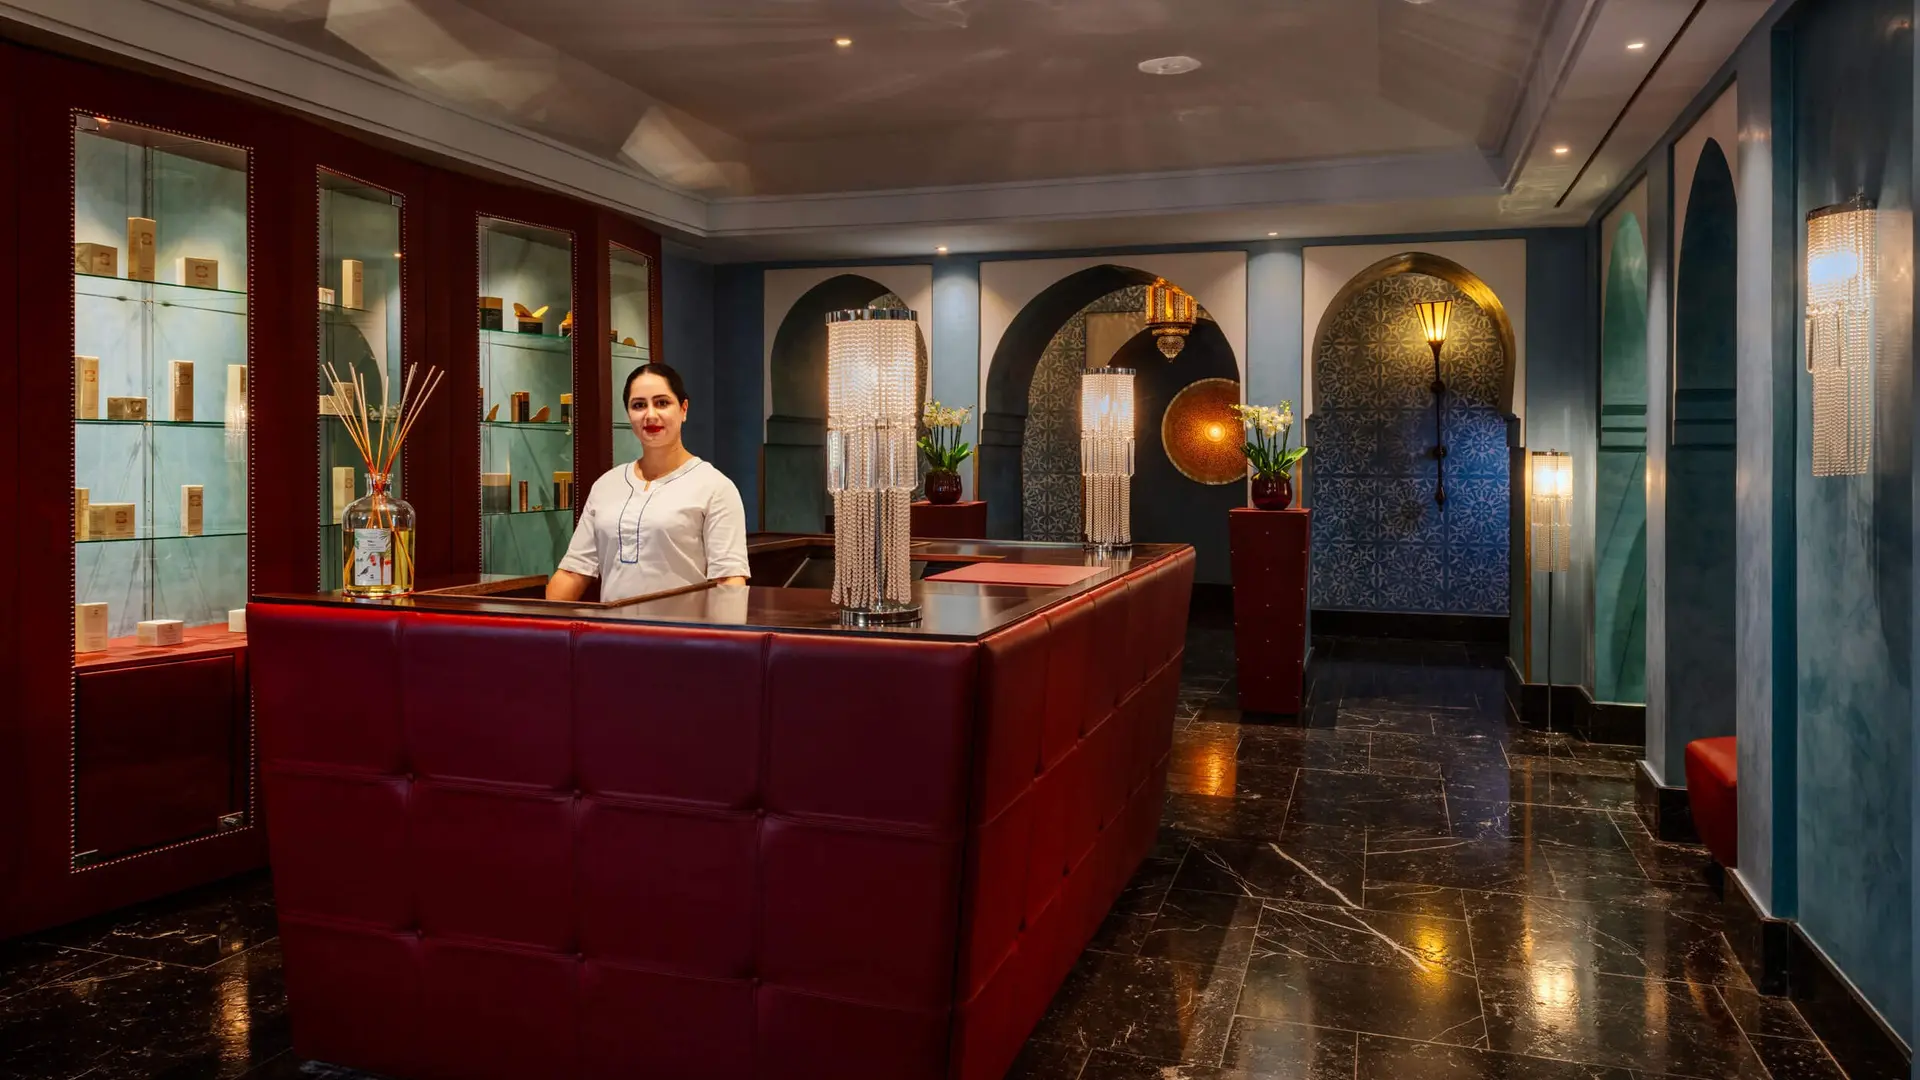 Hotel review Service & Facilities' - La Mamounia - 3